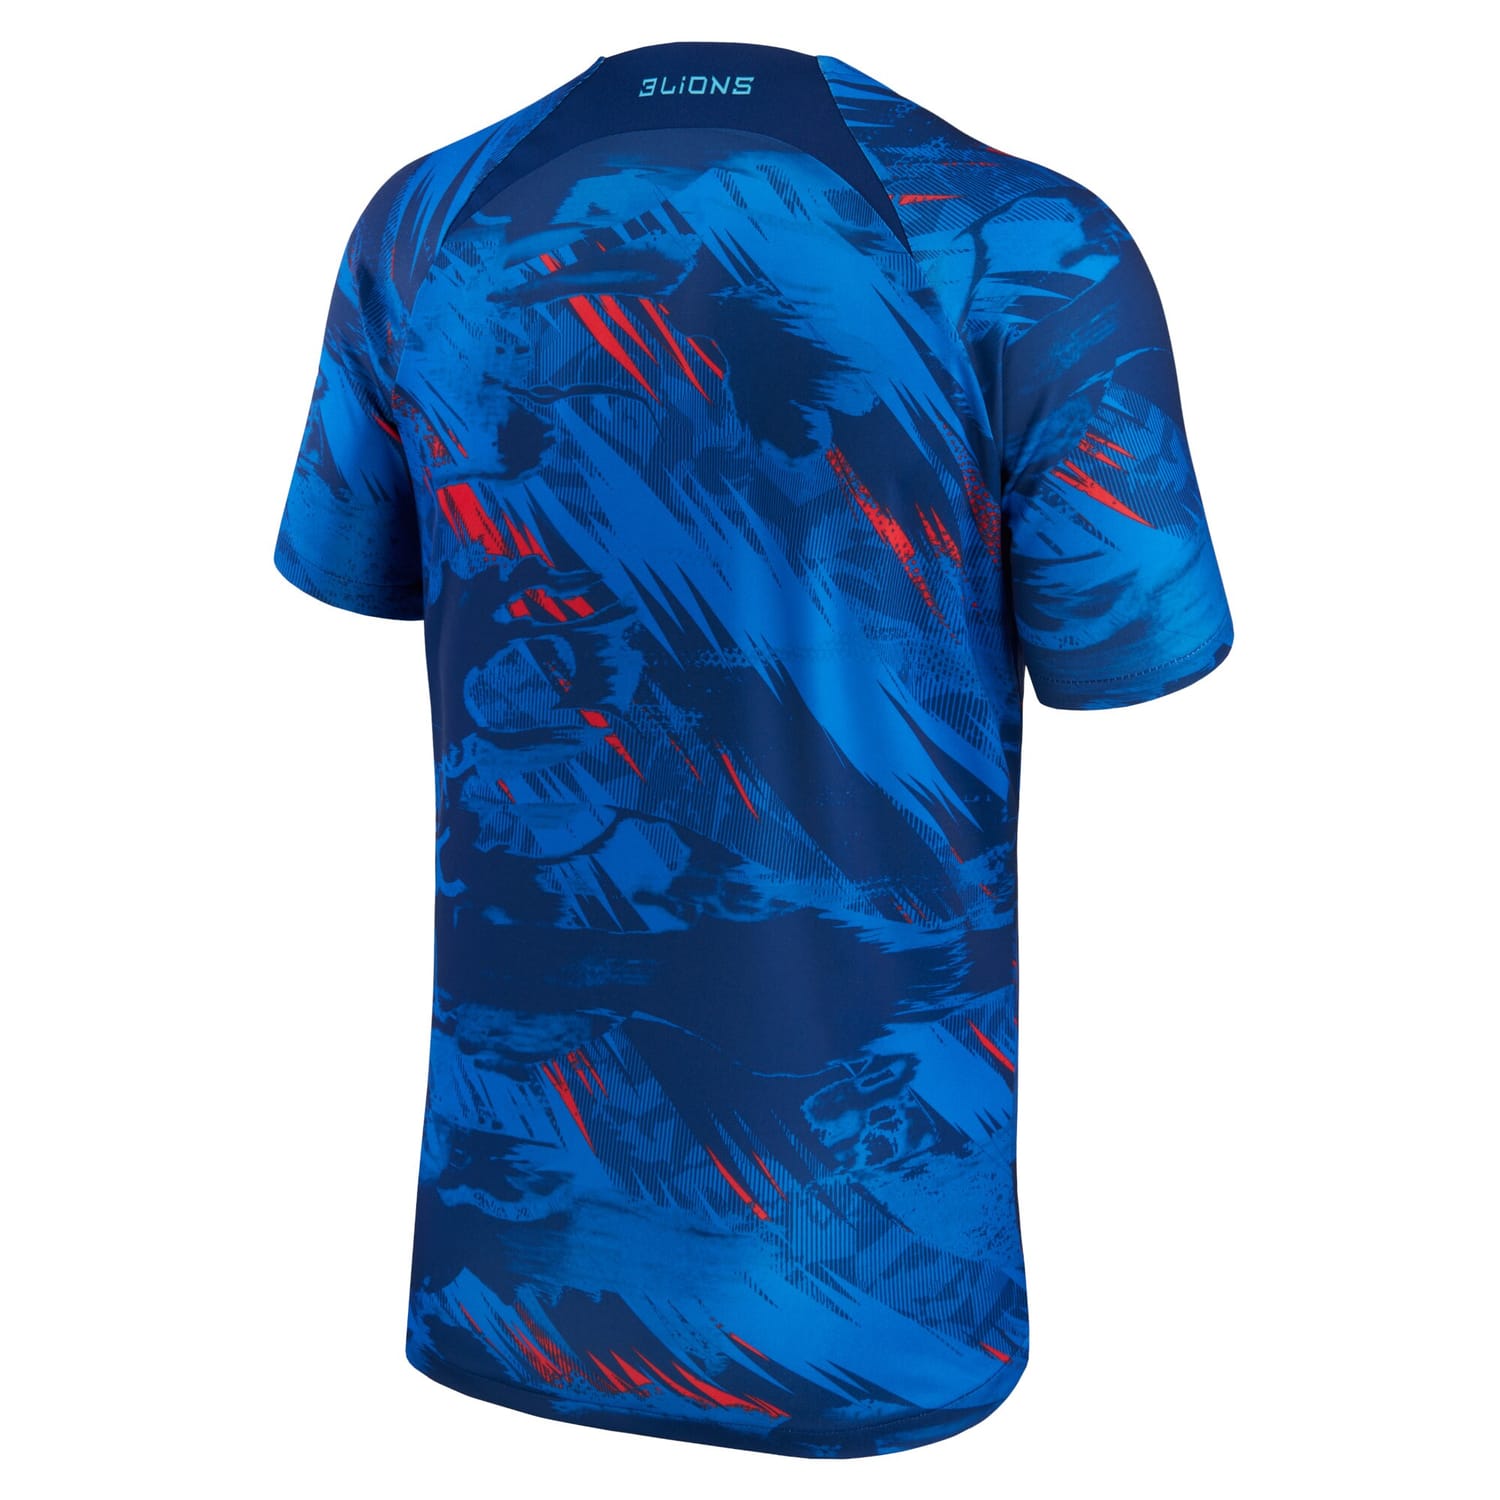 England National Team Pre-Match Jersey Shirt Blue 2022-23 for Men